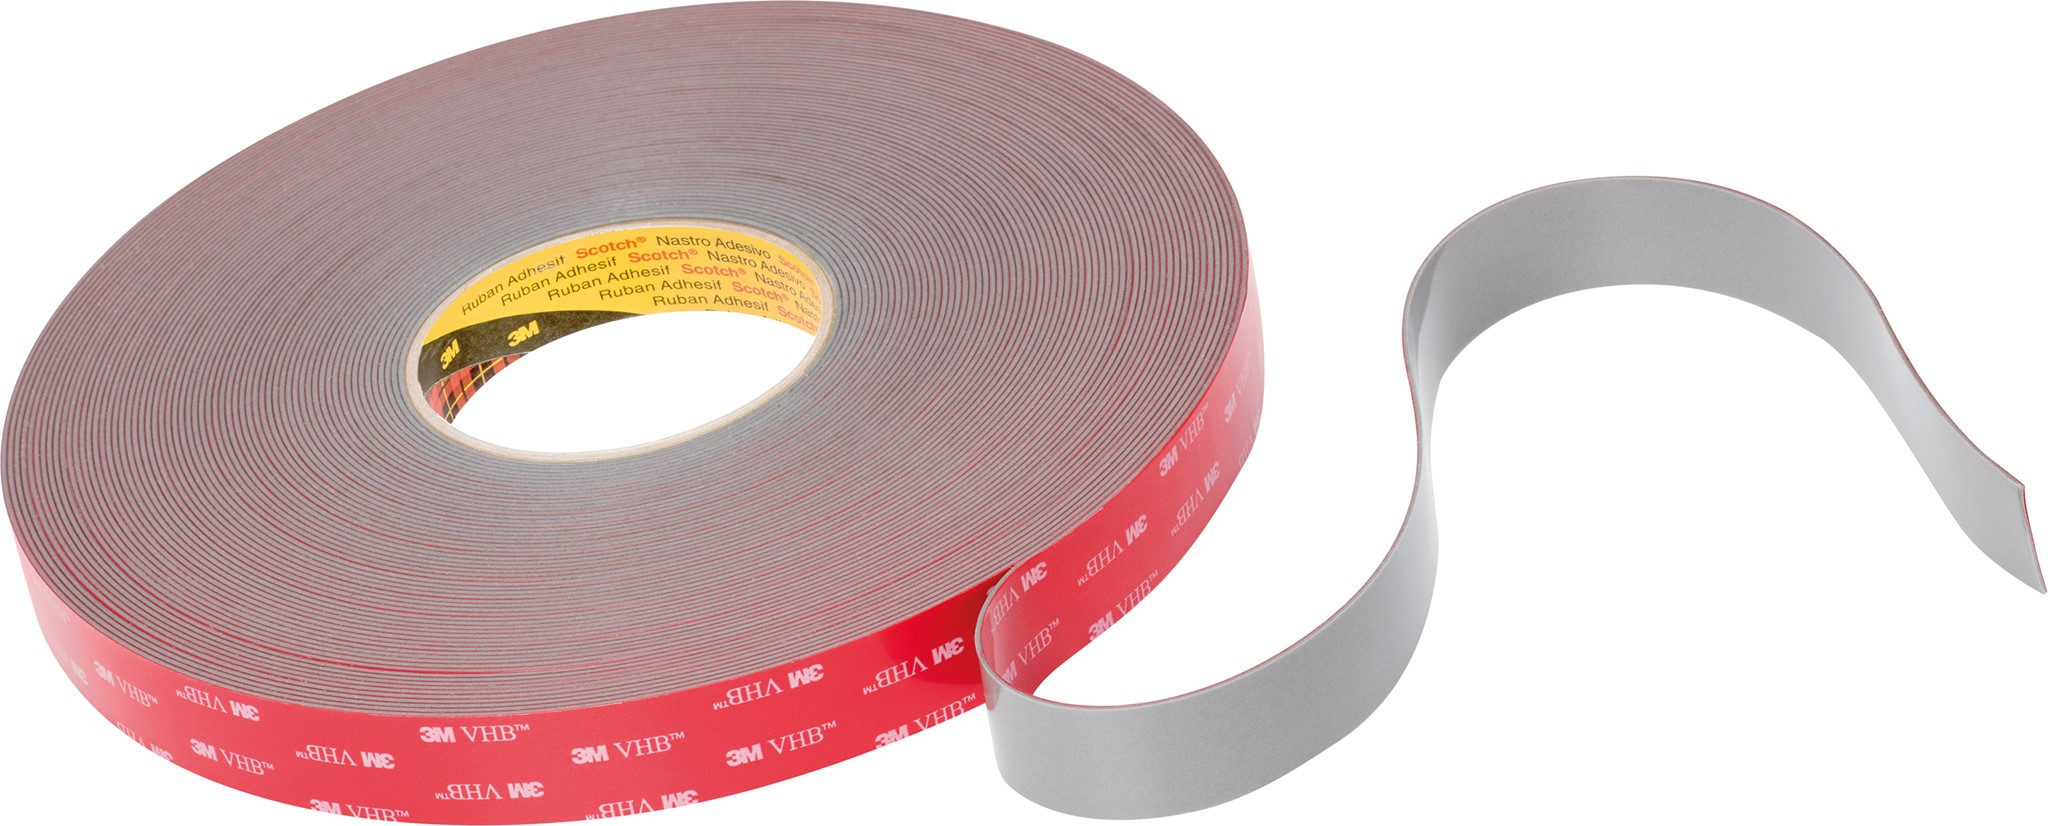 Picture of 3M VHB Tape GPH-110GF grau, 19mm x 33m, 1.1mm